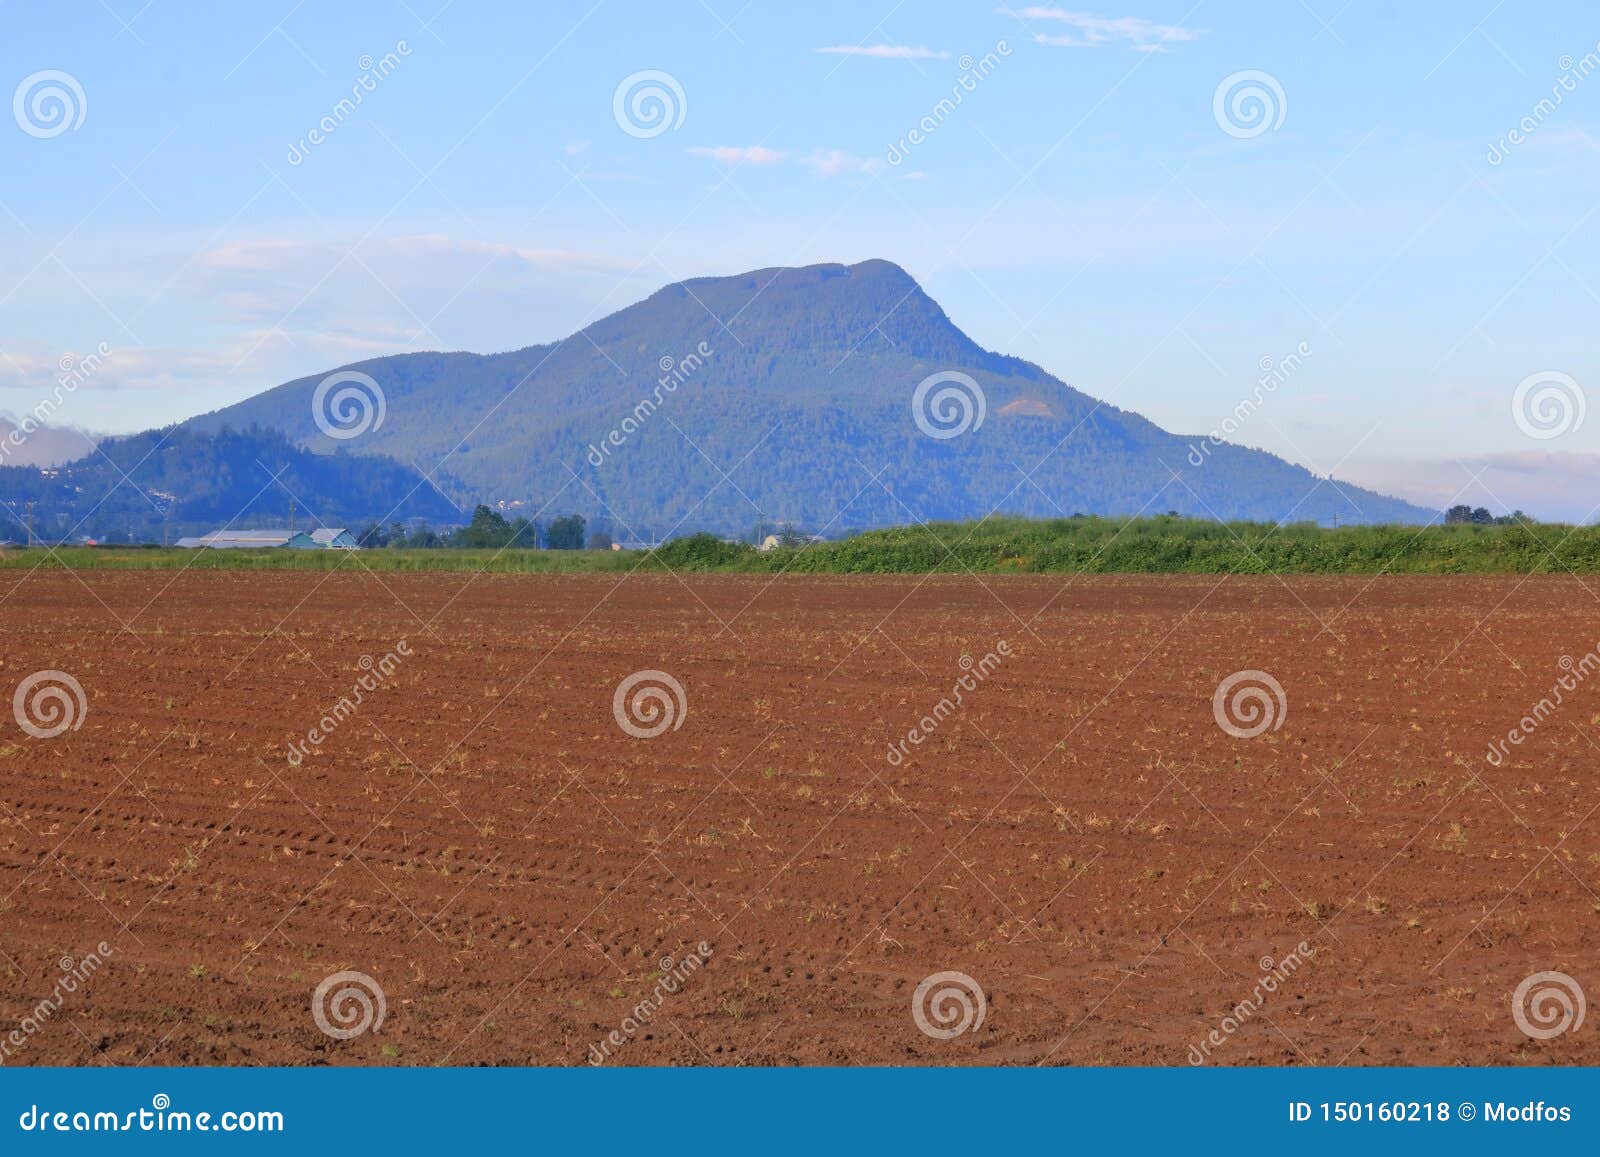 Inactieve Vulkaan en Landbouwgrond. Een oude inactieve vulkaan overziet eerste landbouwlandbouwgrond die voor het zaaien klaar is